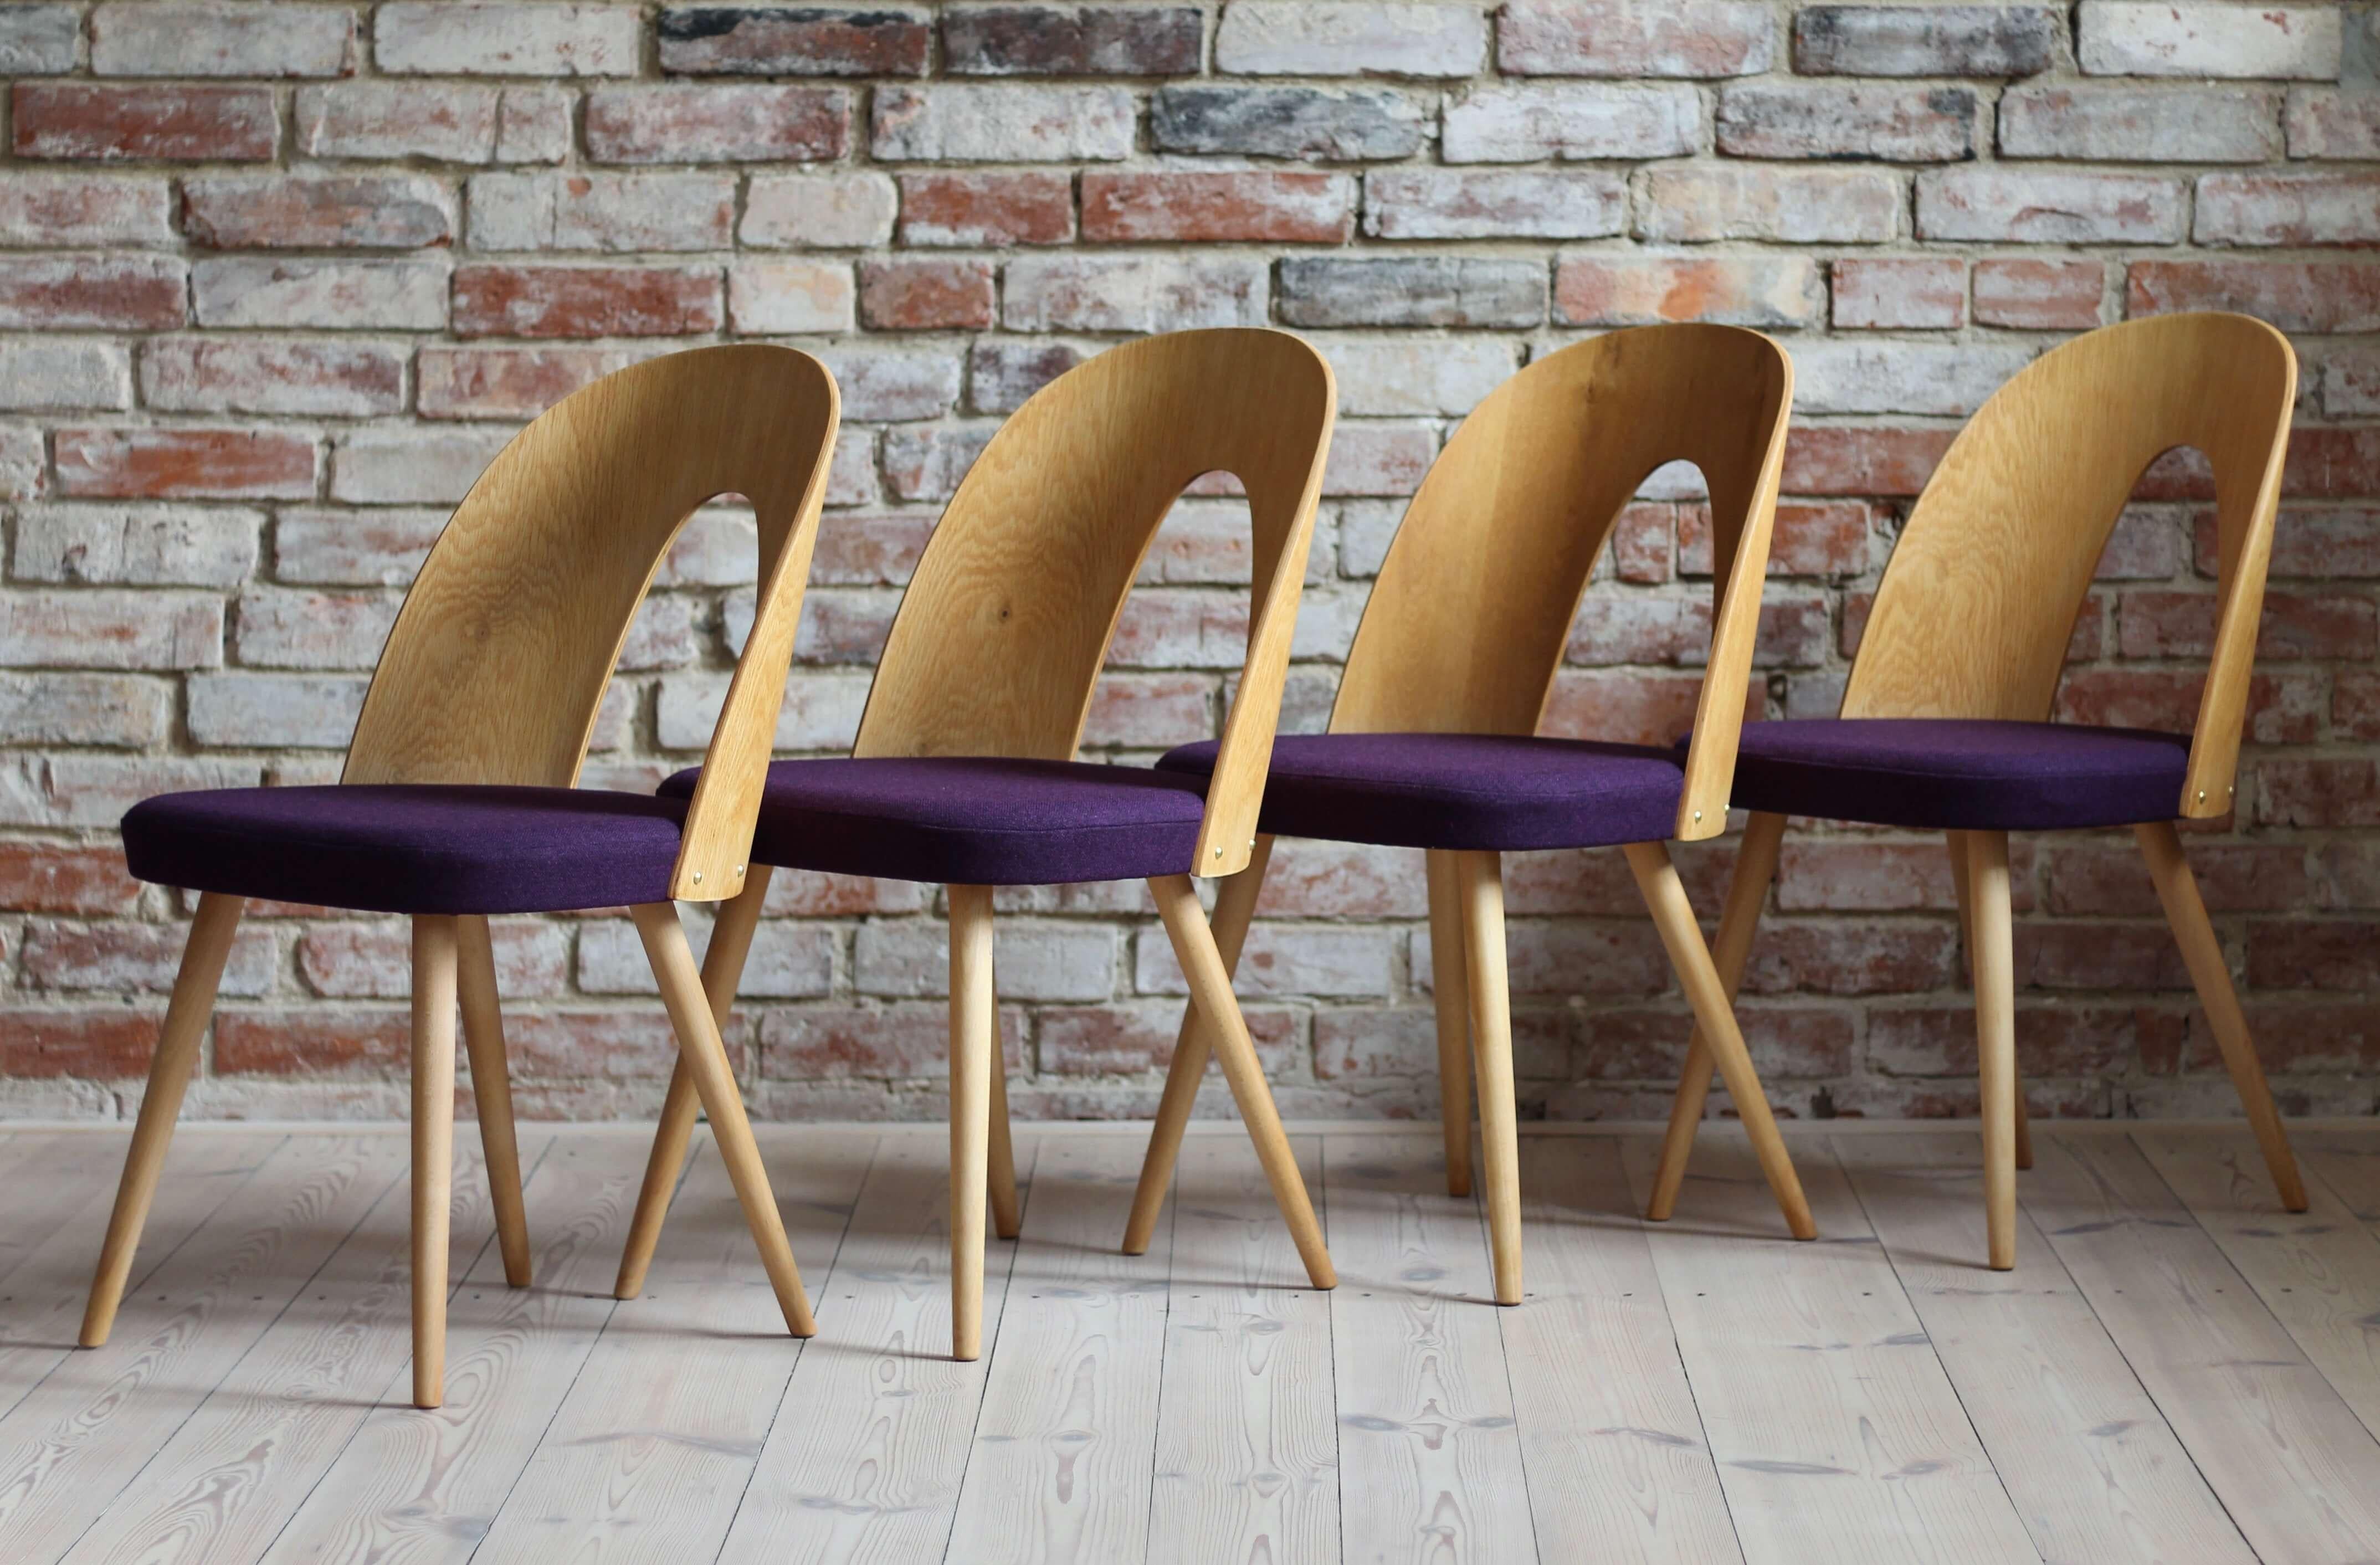 Cet ensemble de quatre chaises de salle à manger vintage a été conçu par le designer tchèque Antonin Šuman dans les années 1960. Les chaises ont été entièrement restaurées et finies avec une huile de haute qualité qui leur a donné une finition